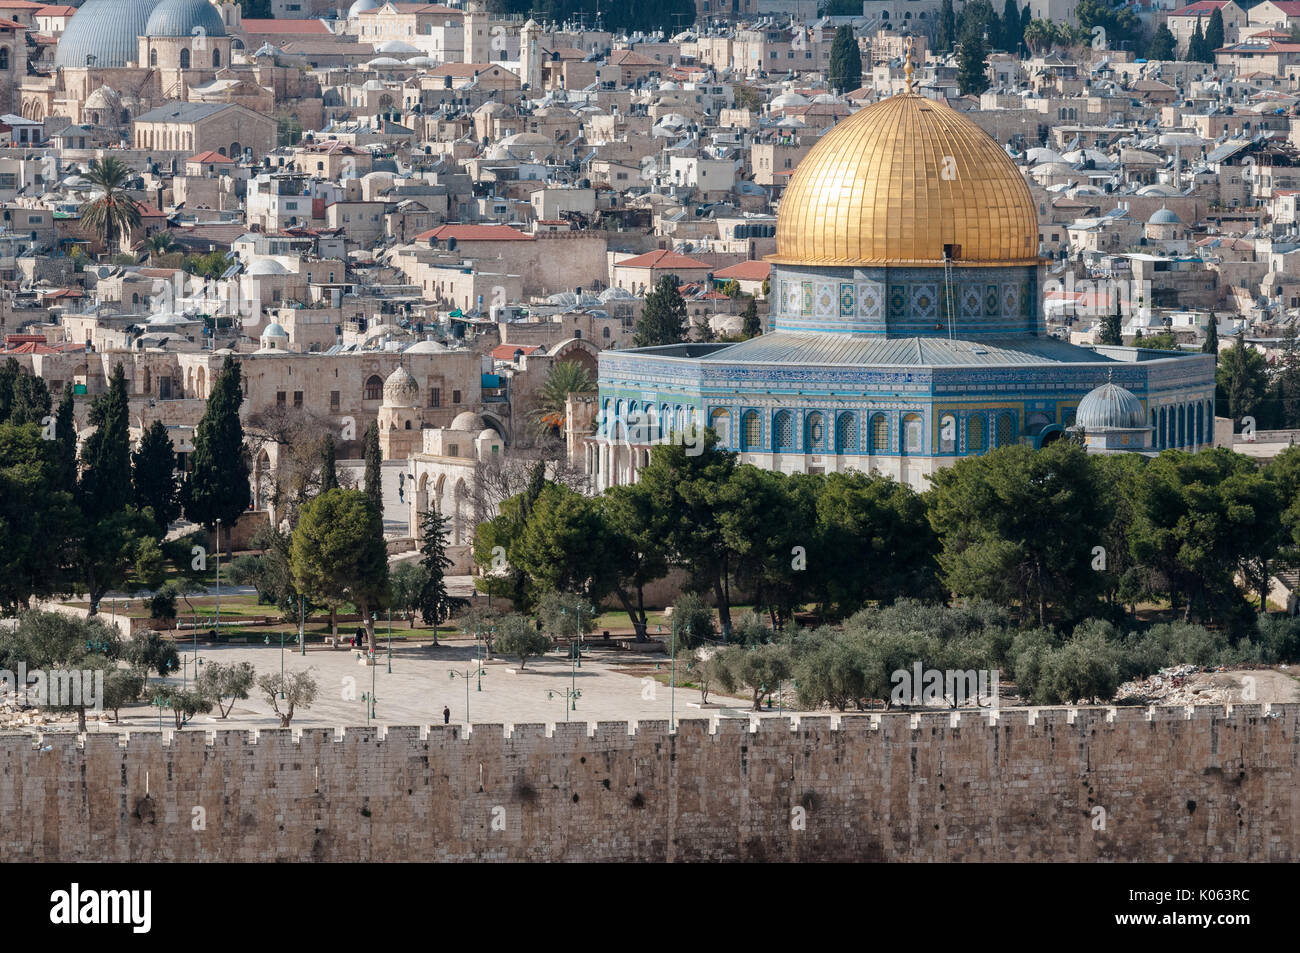 Le dôme du Rocher sur le mont du Temple à Jérusalem, Israël, le lieu saint des trois religions monoteistic : judaïsme, christianisme et islam. Banque D'Images